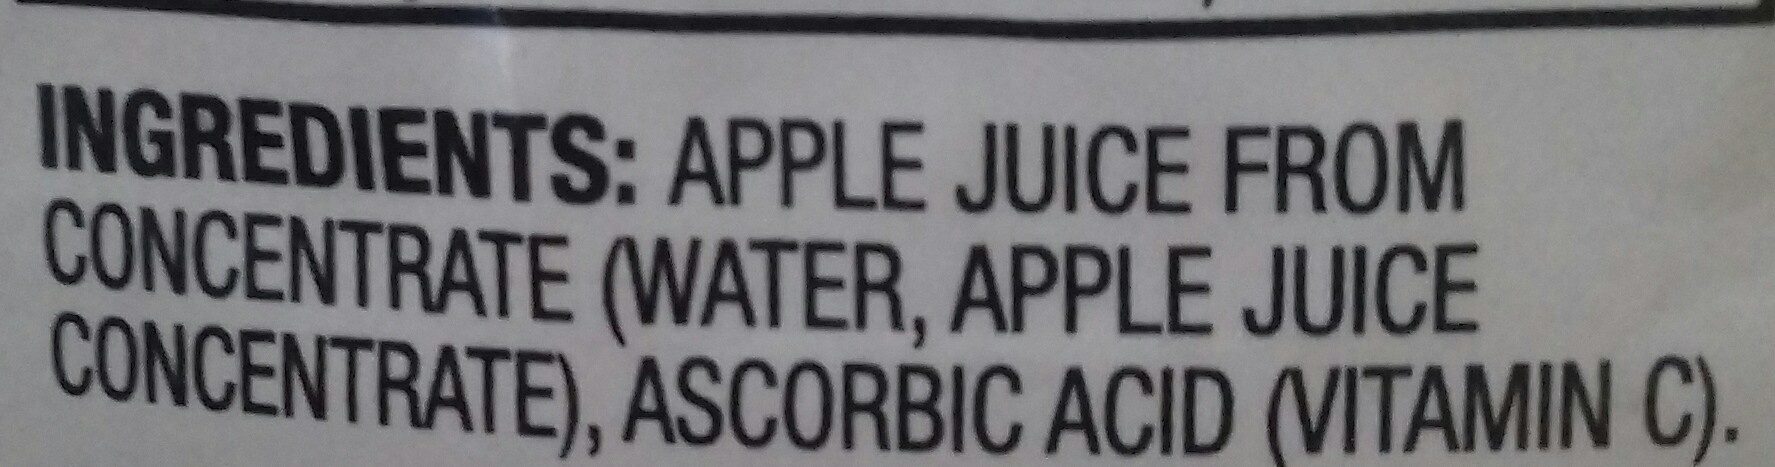 100% juice - Ingredients